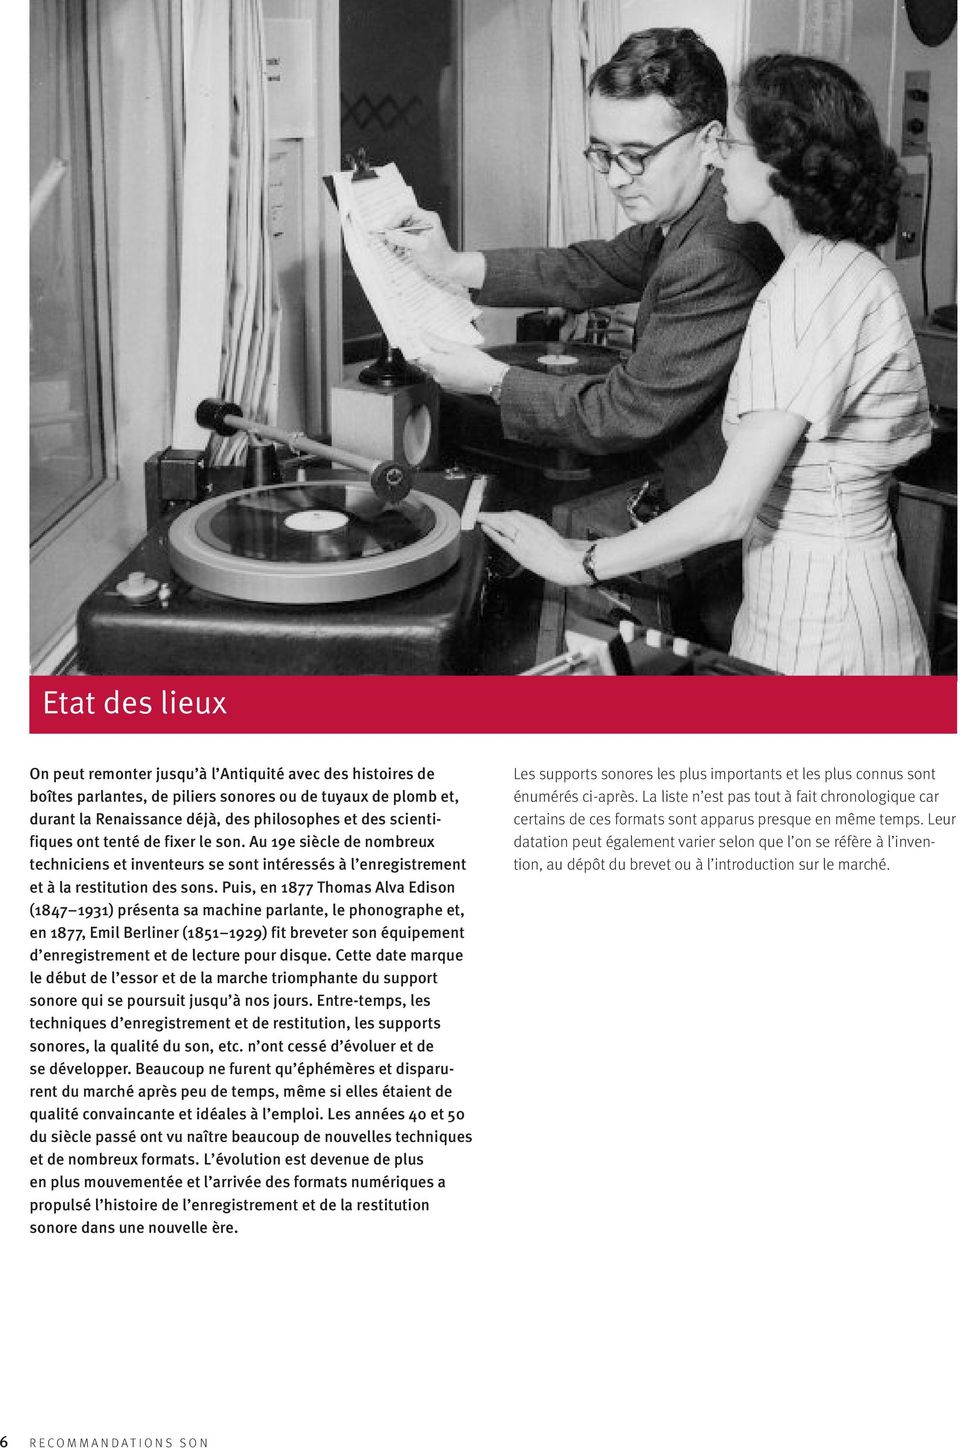 Puis, en 1877 Thomas Alva Edison (1847 1931) présenta sa machine parlante, le phonographe et, en 1877, Emil Berliner (1851 1929) fit breveter son équipement d enregistrement et de lecture pour disque.